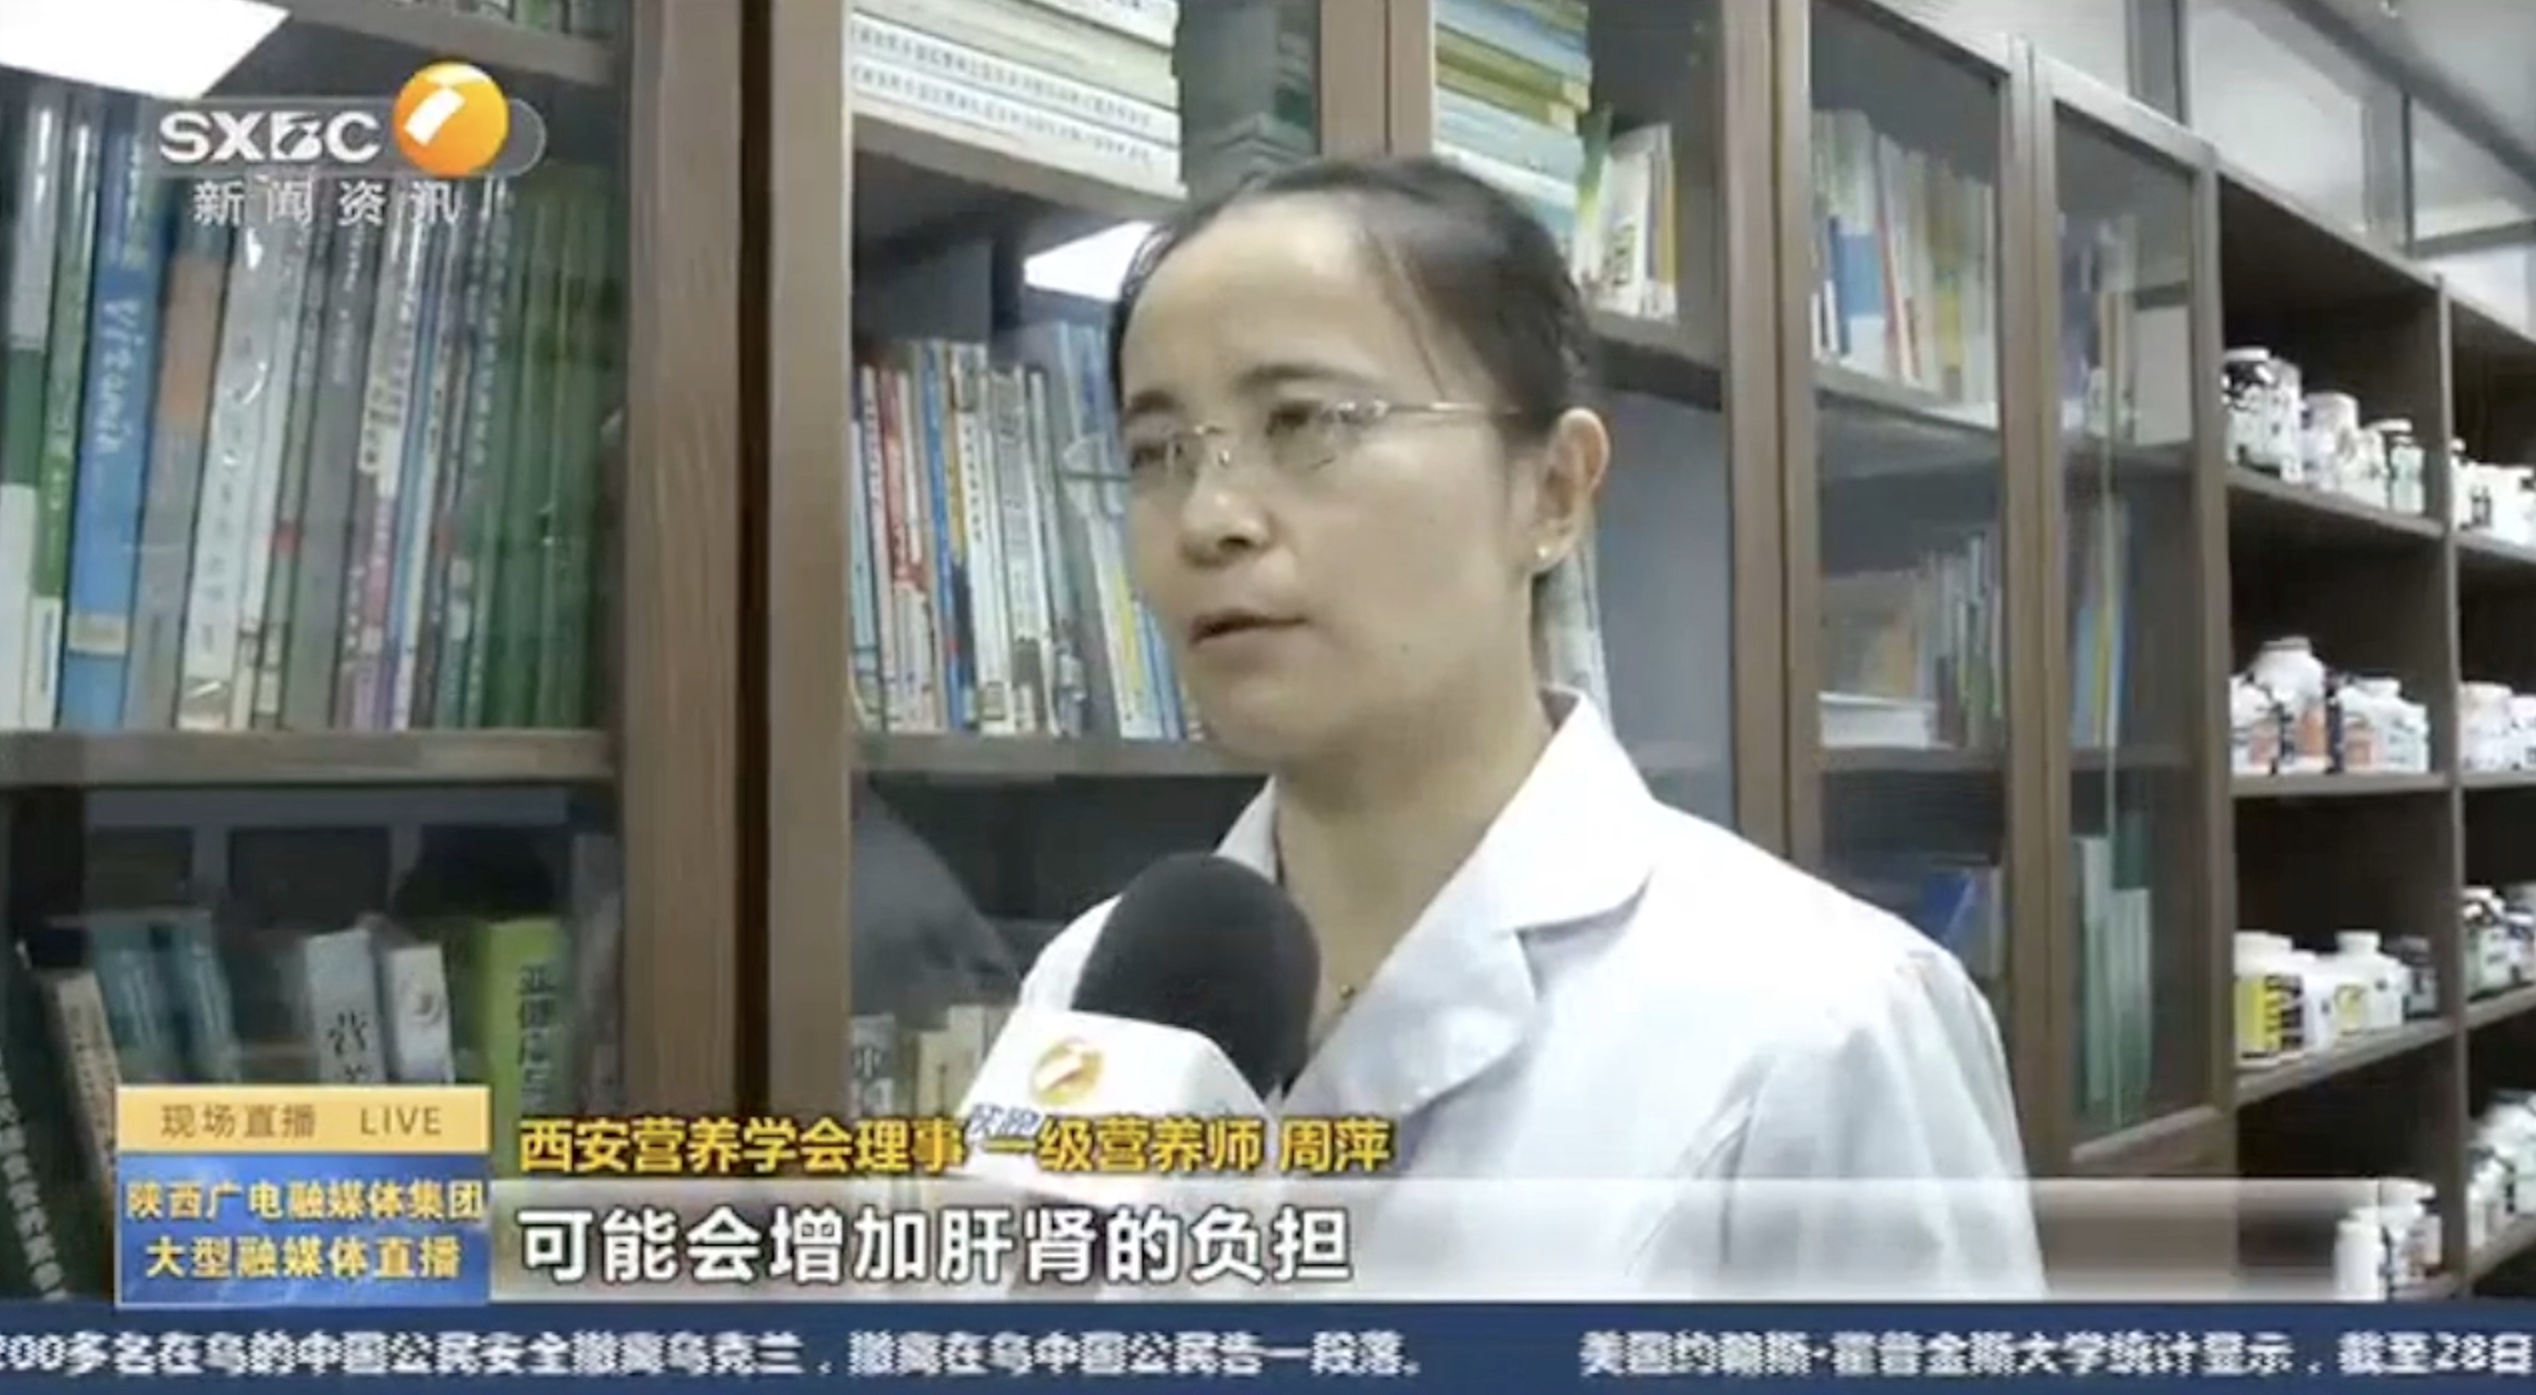 接受陕西电视台《第一新闻午间播报》采访“不合格食品的危害”